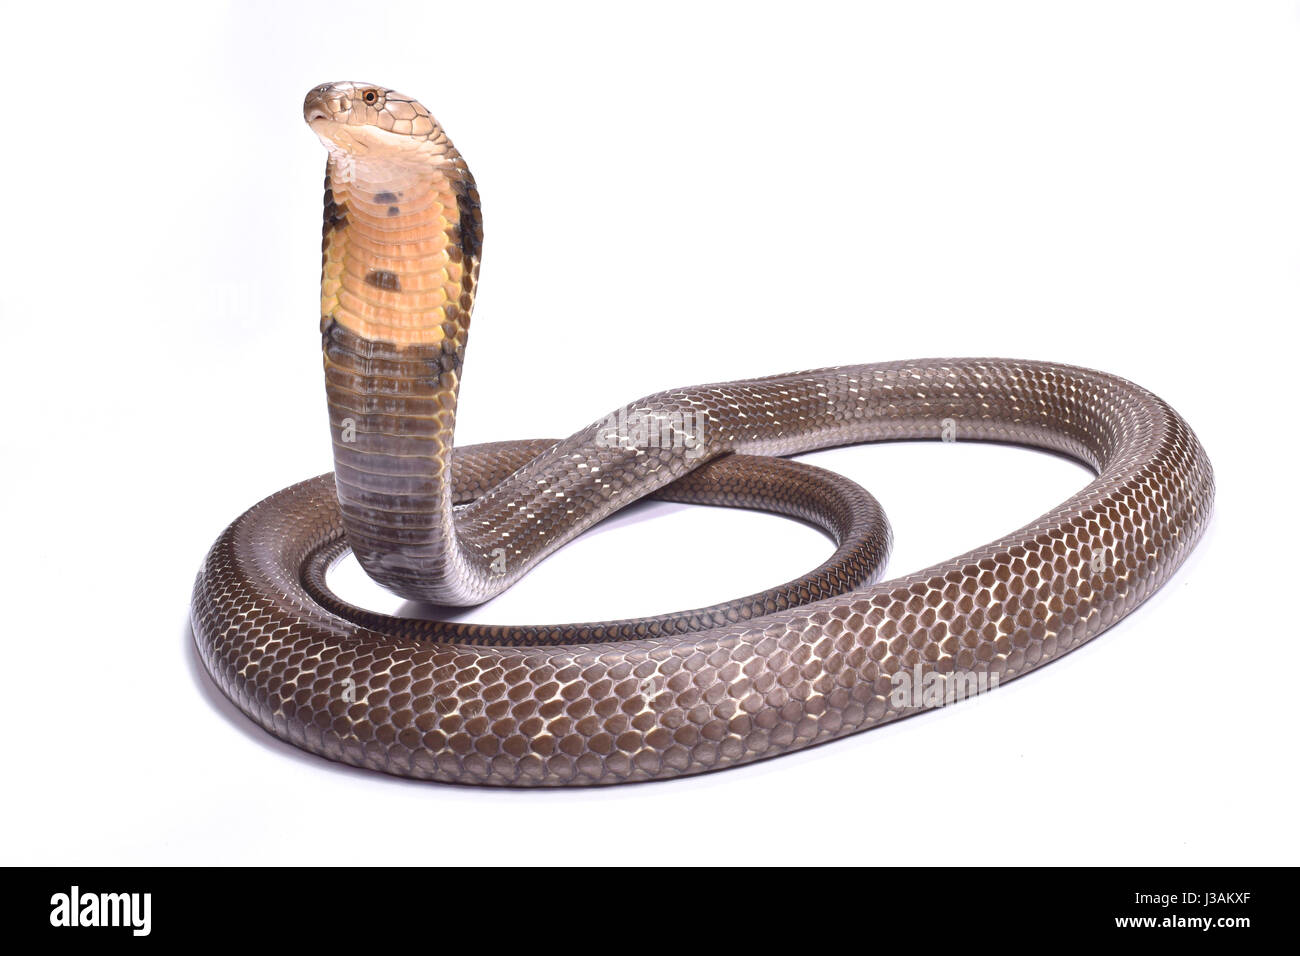 King cobra (Ophiophagus hannah) Stock Photo